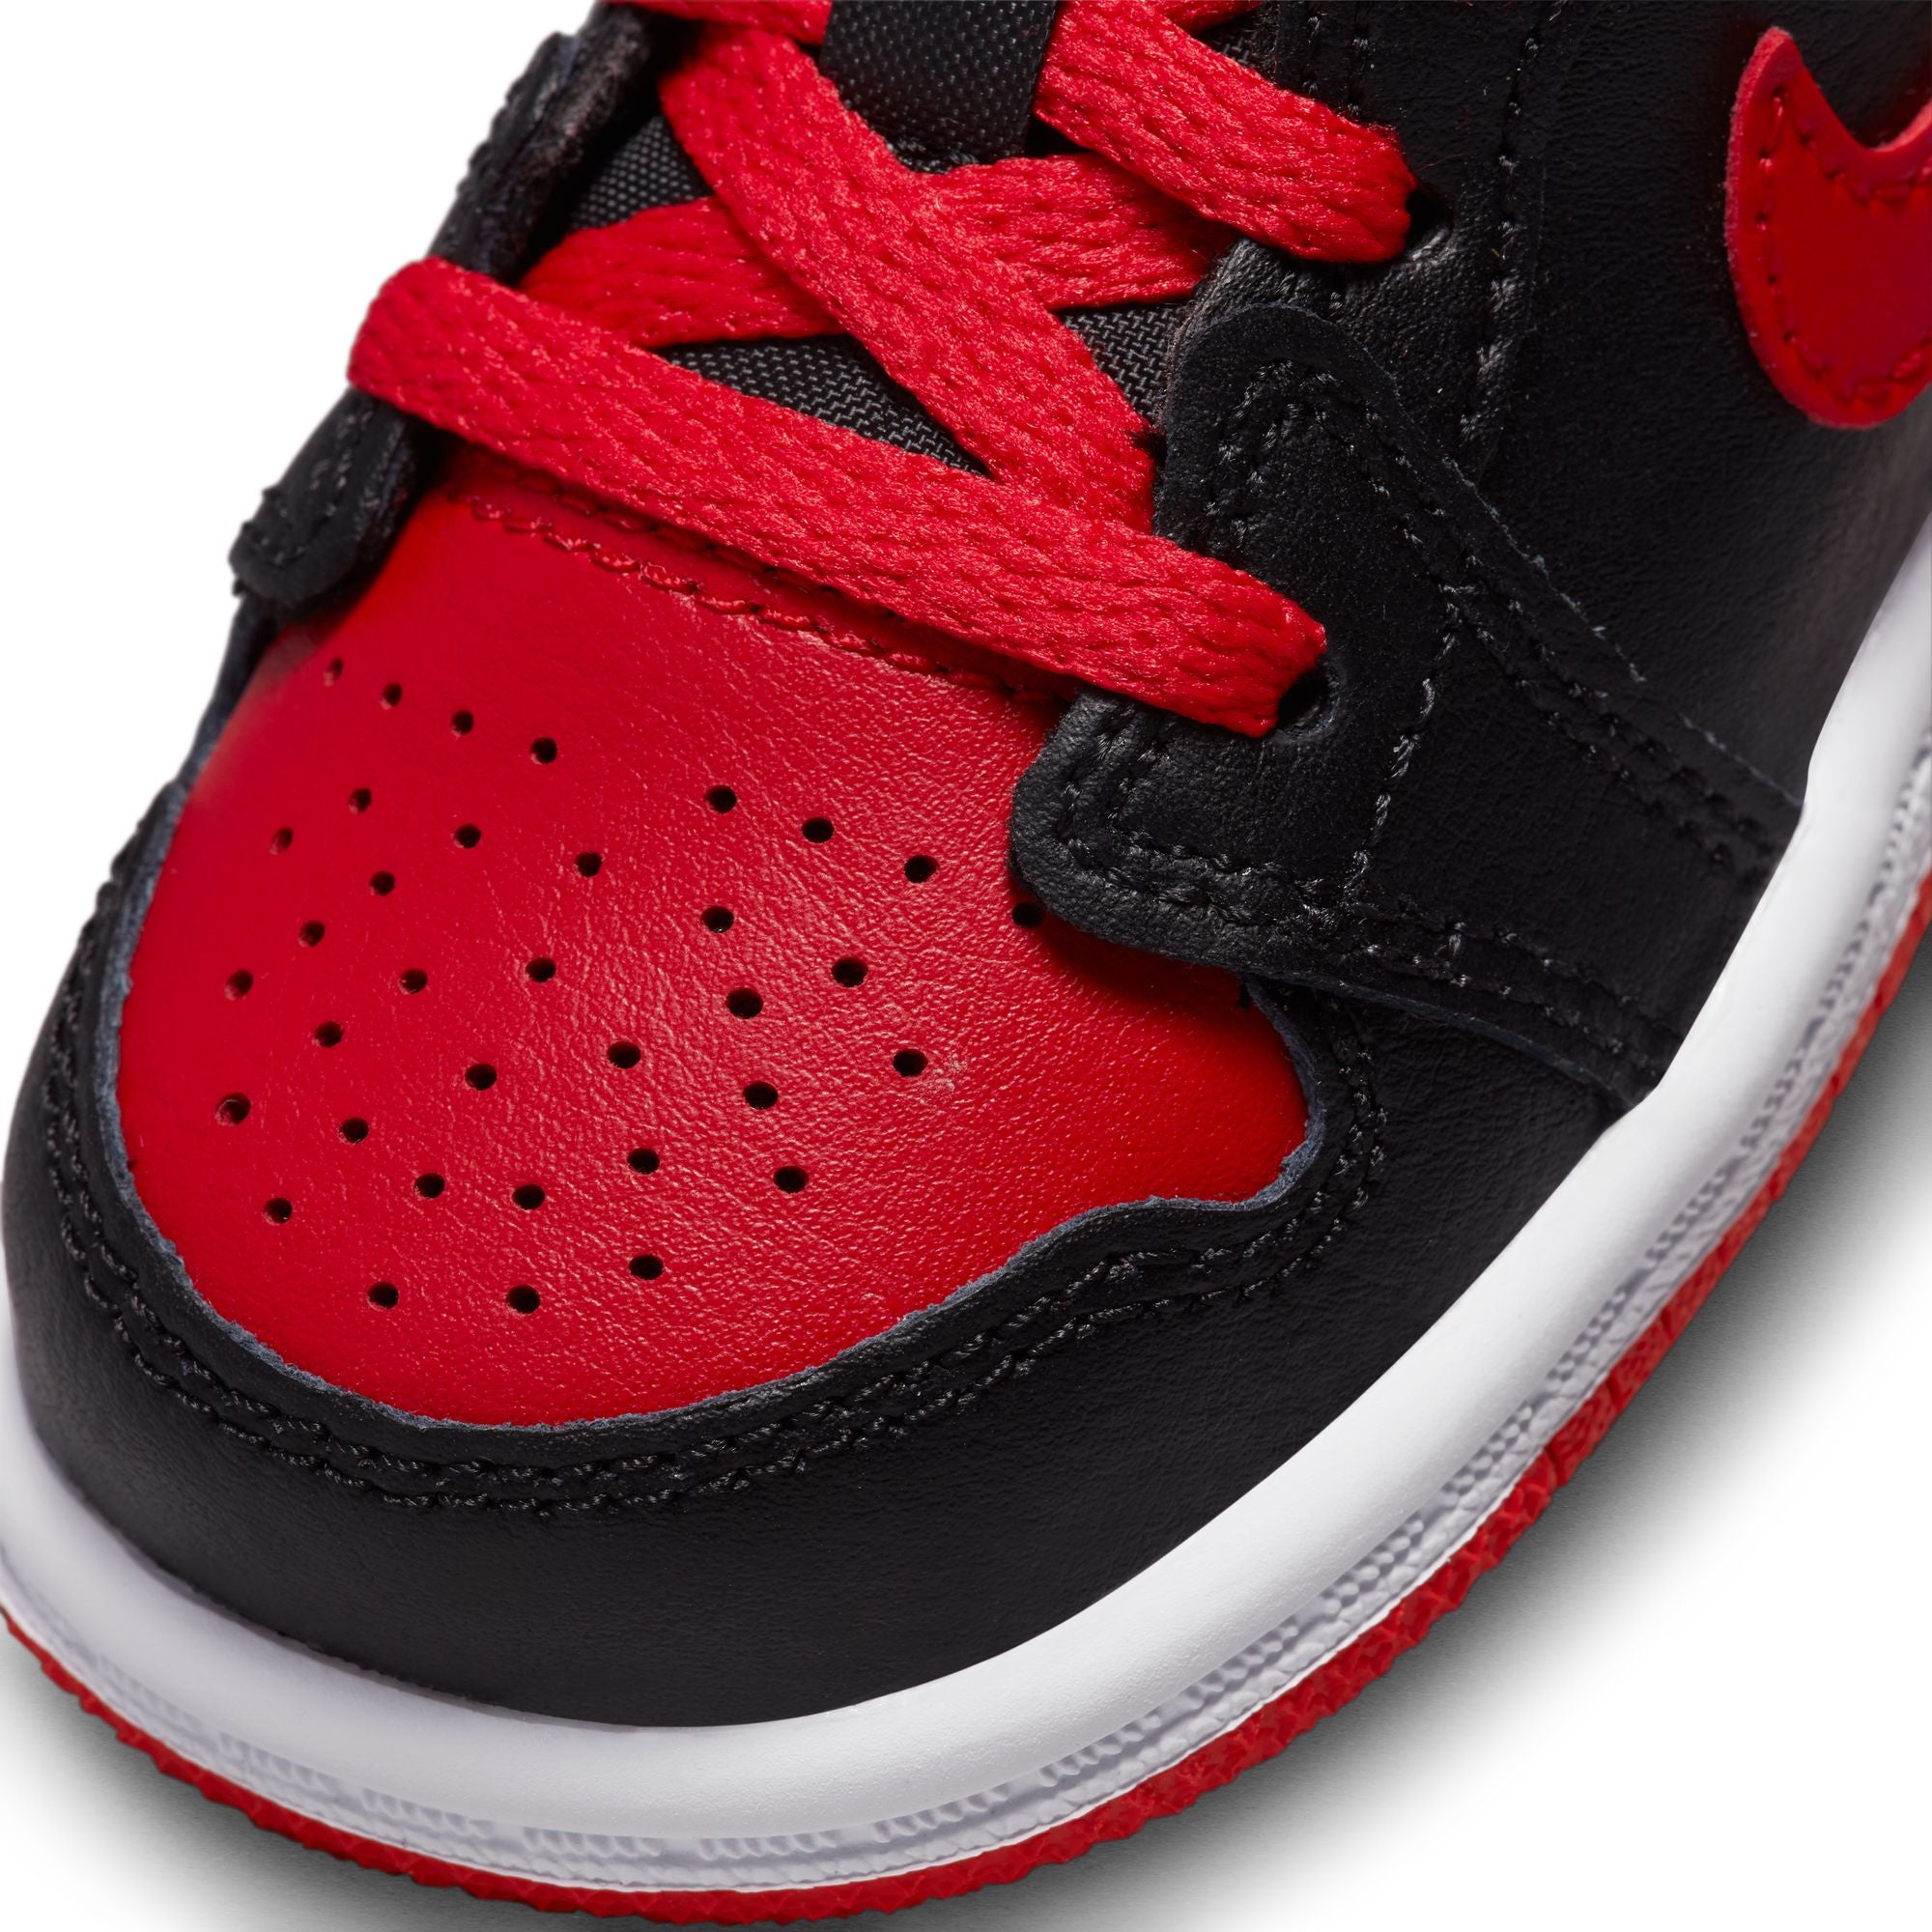 Nike Air Jordan 1 MID (TD)